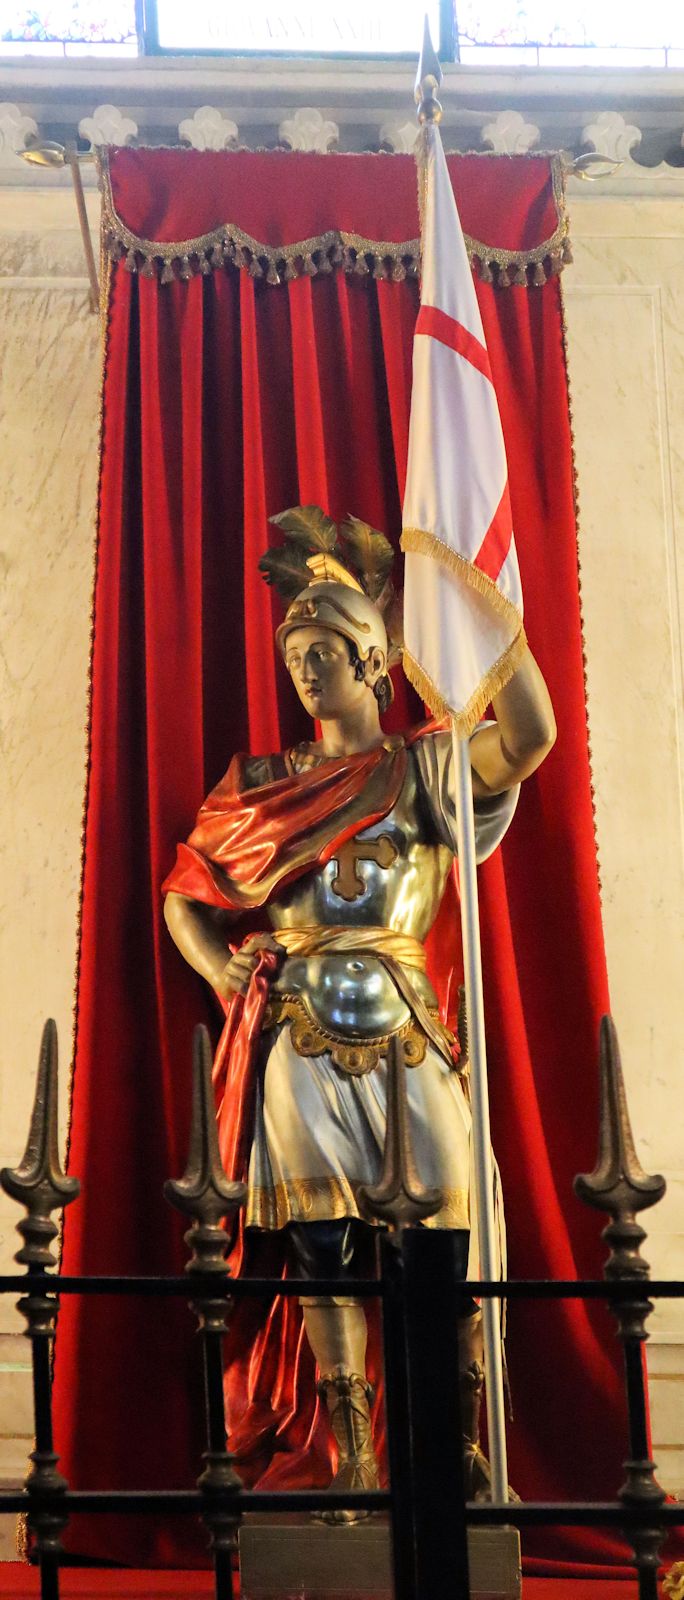 Julianus-Statue (mit Fahne von Savoyen) in der Pfarrkirche in Barbania bei Turin